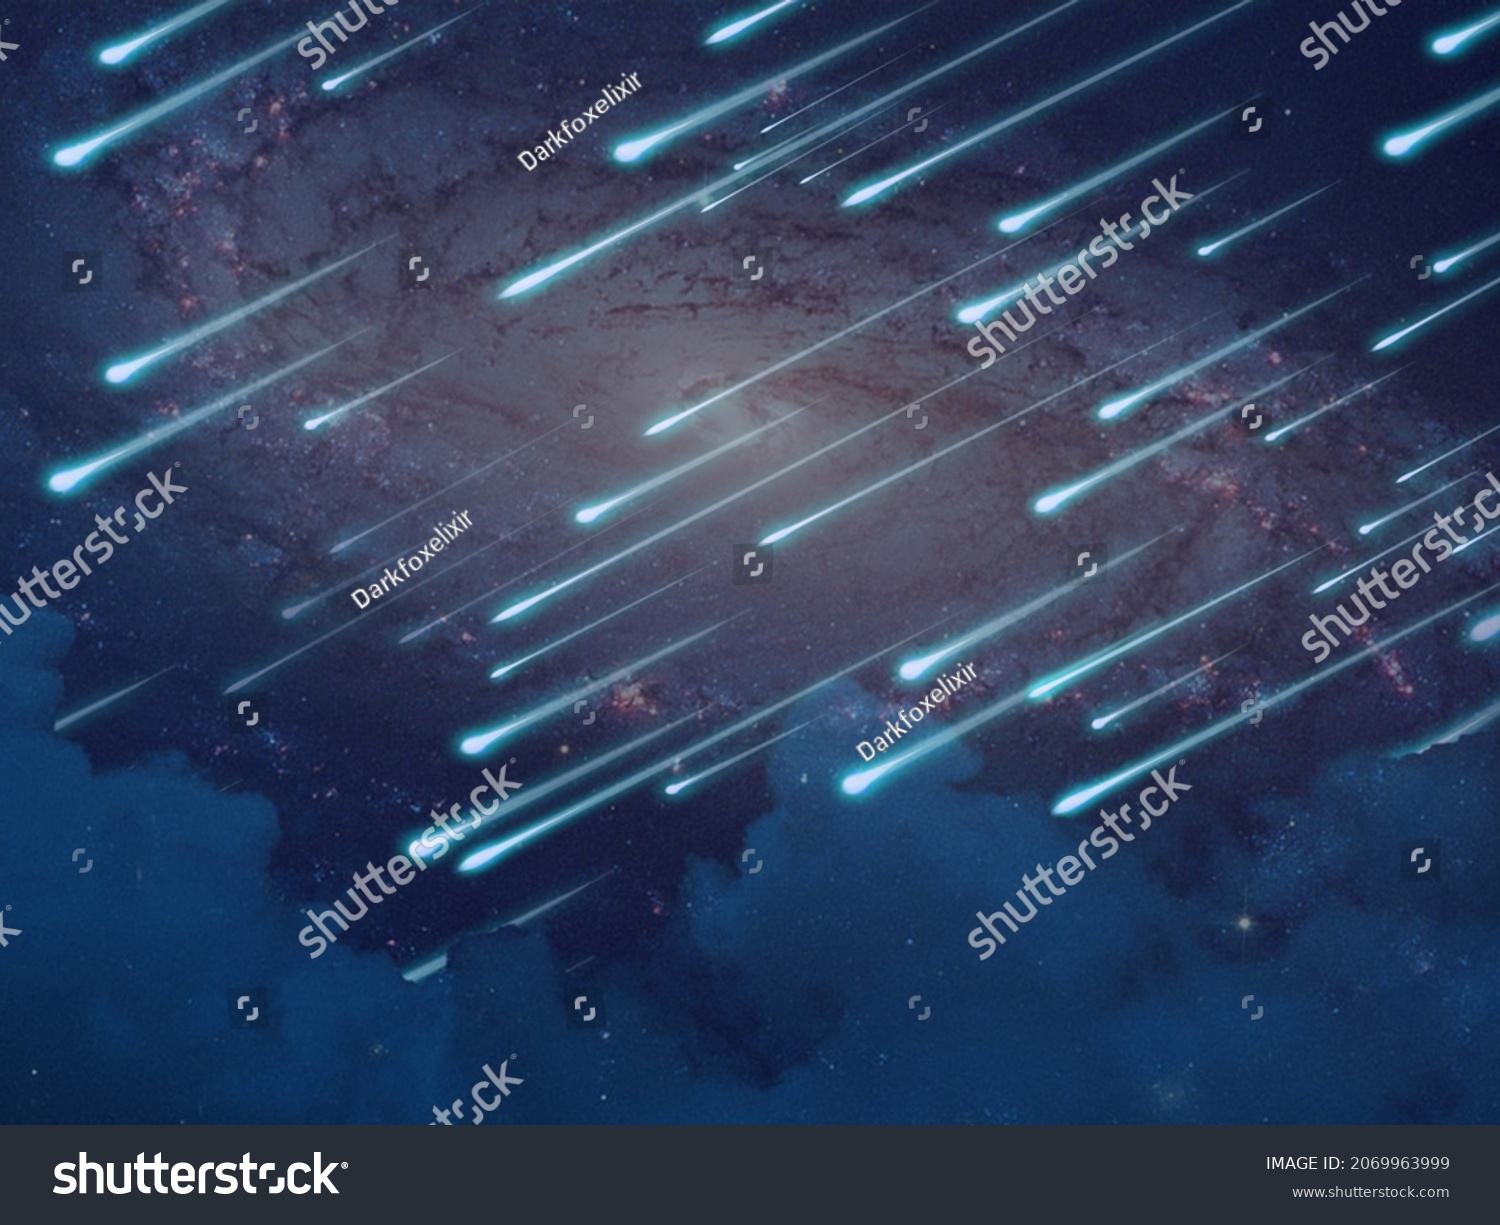 Meteor rain immagini, foto stock e grafica vettoriale Shutterstock